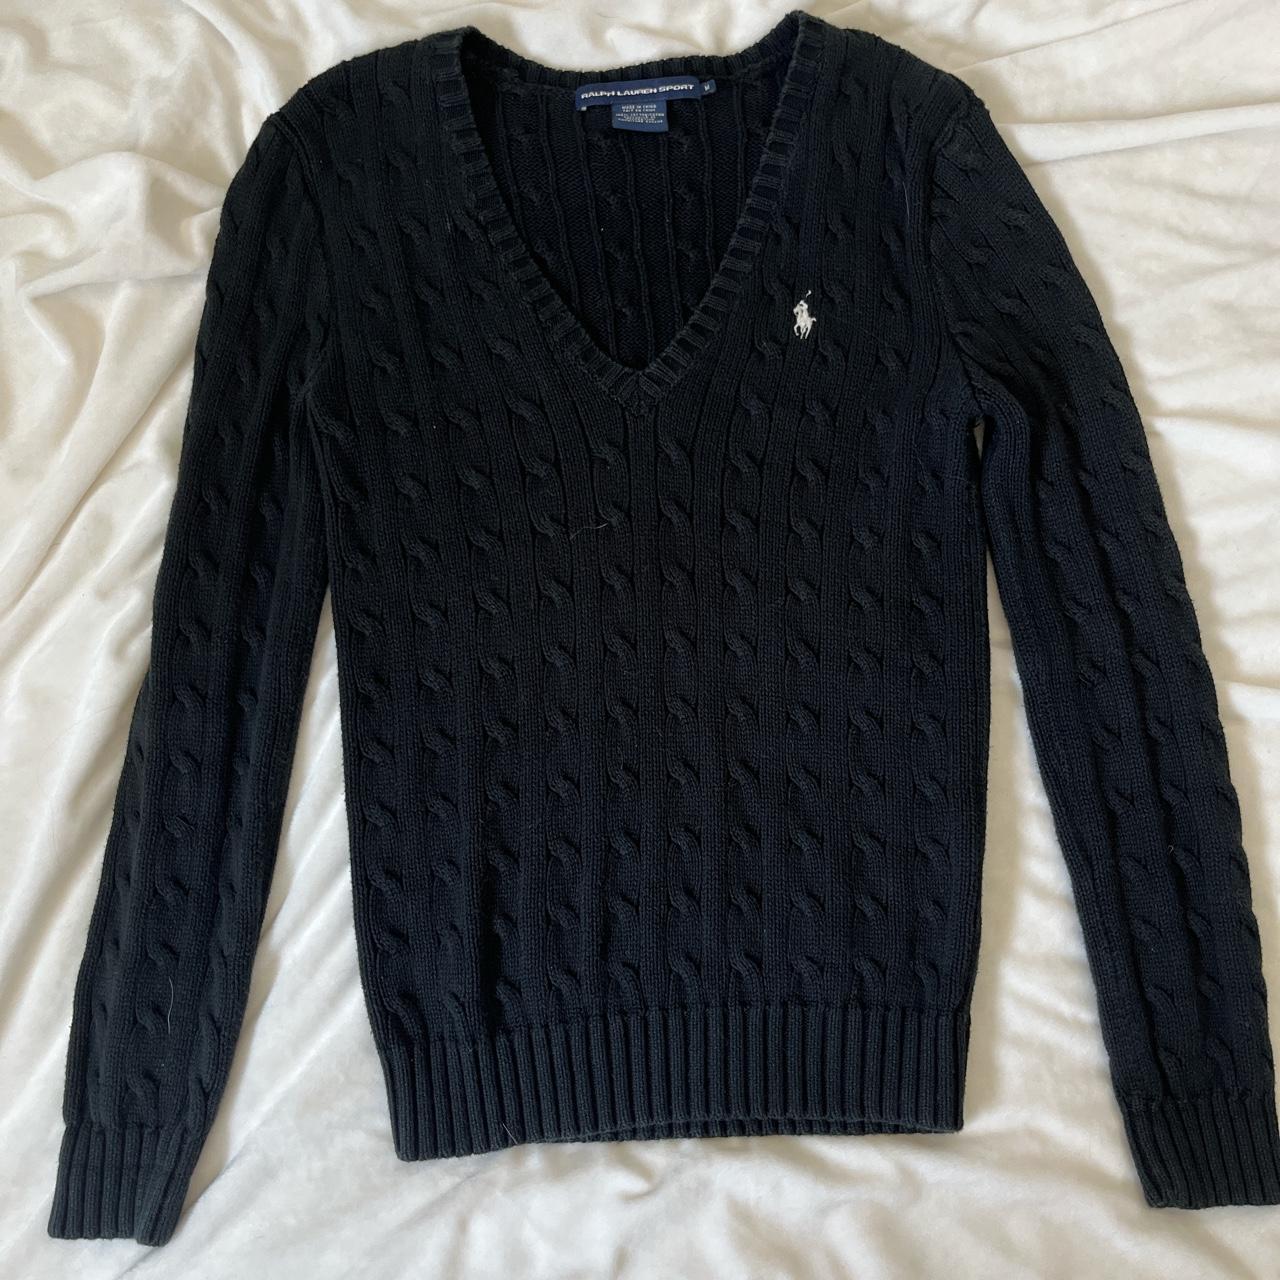 Ralph Lauren cable knit sweater #oldmoney #knitwear... - Depop